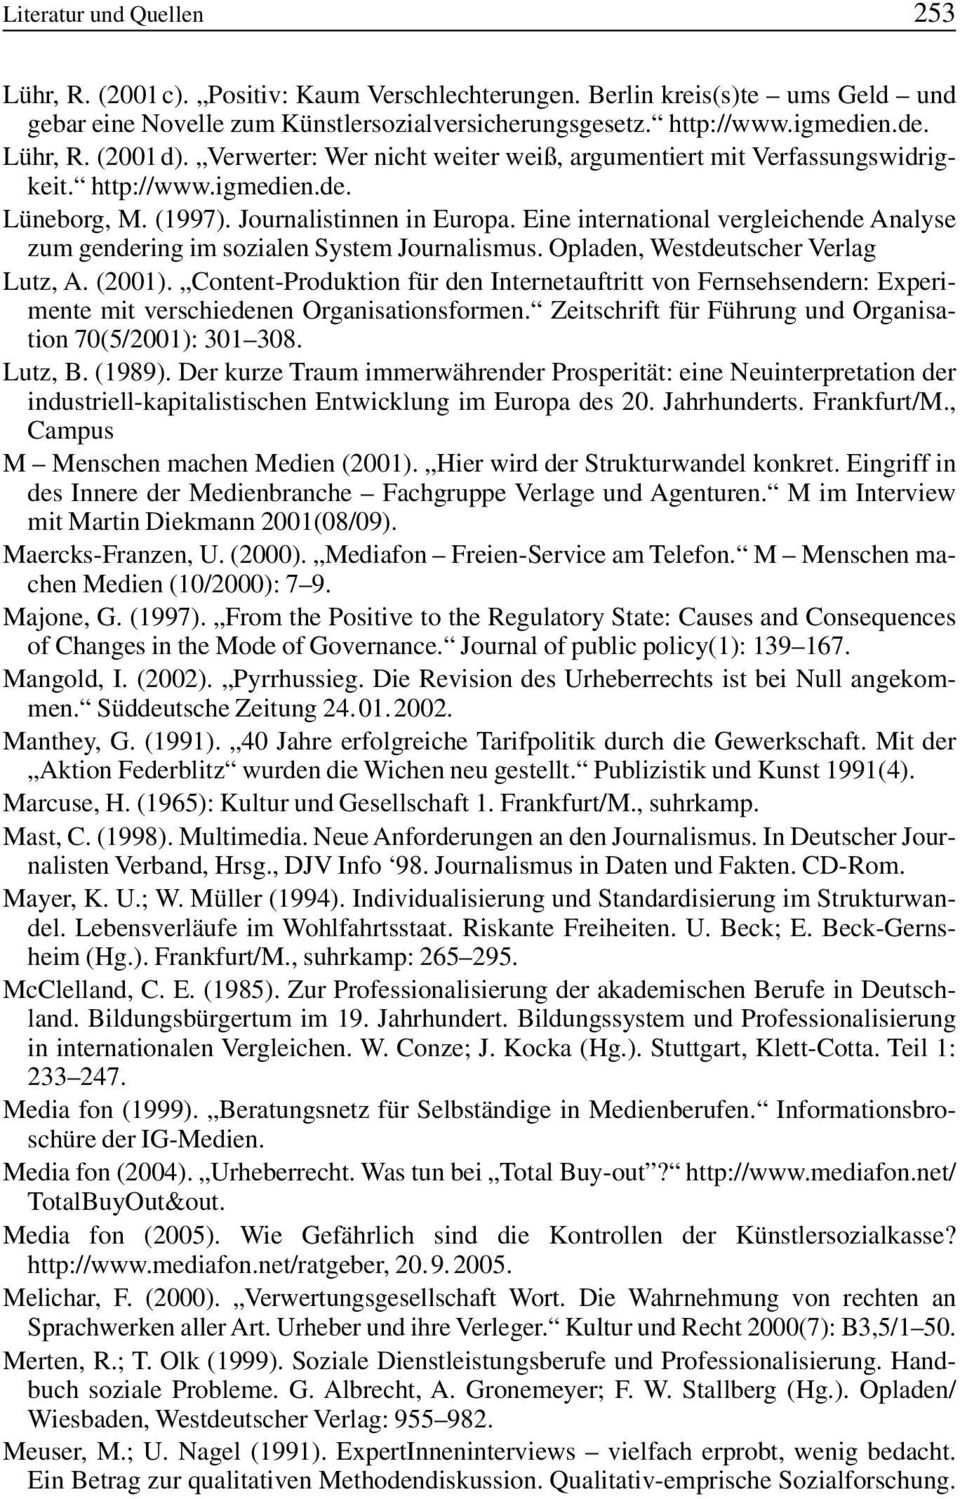 Eine international vergleichende Analyse zum gendering im sozialen System Journalismus. Opladen, Westdeutscher Verlag Lutz, A. (2001).